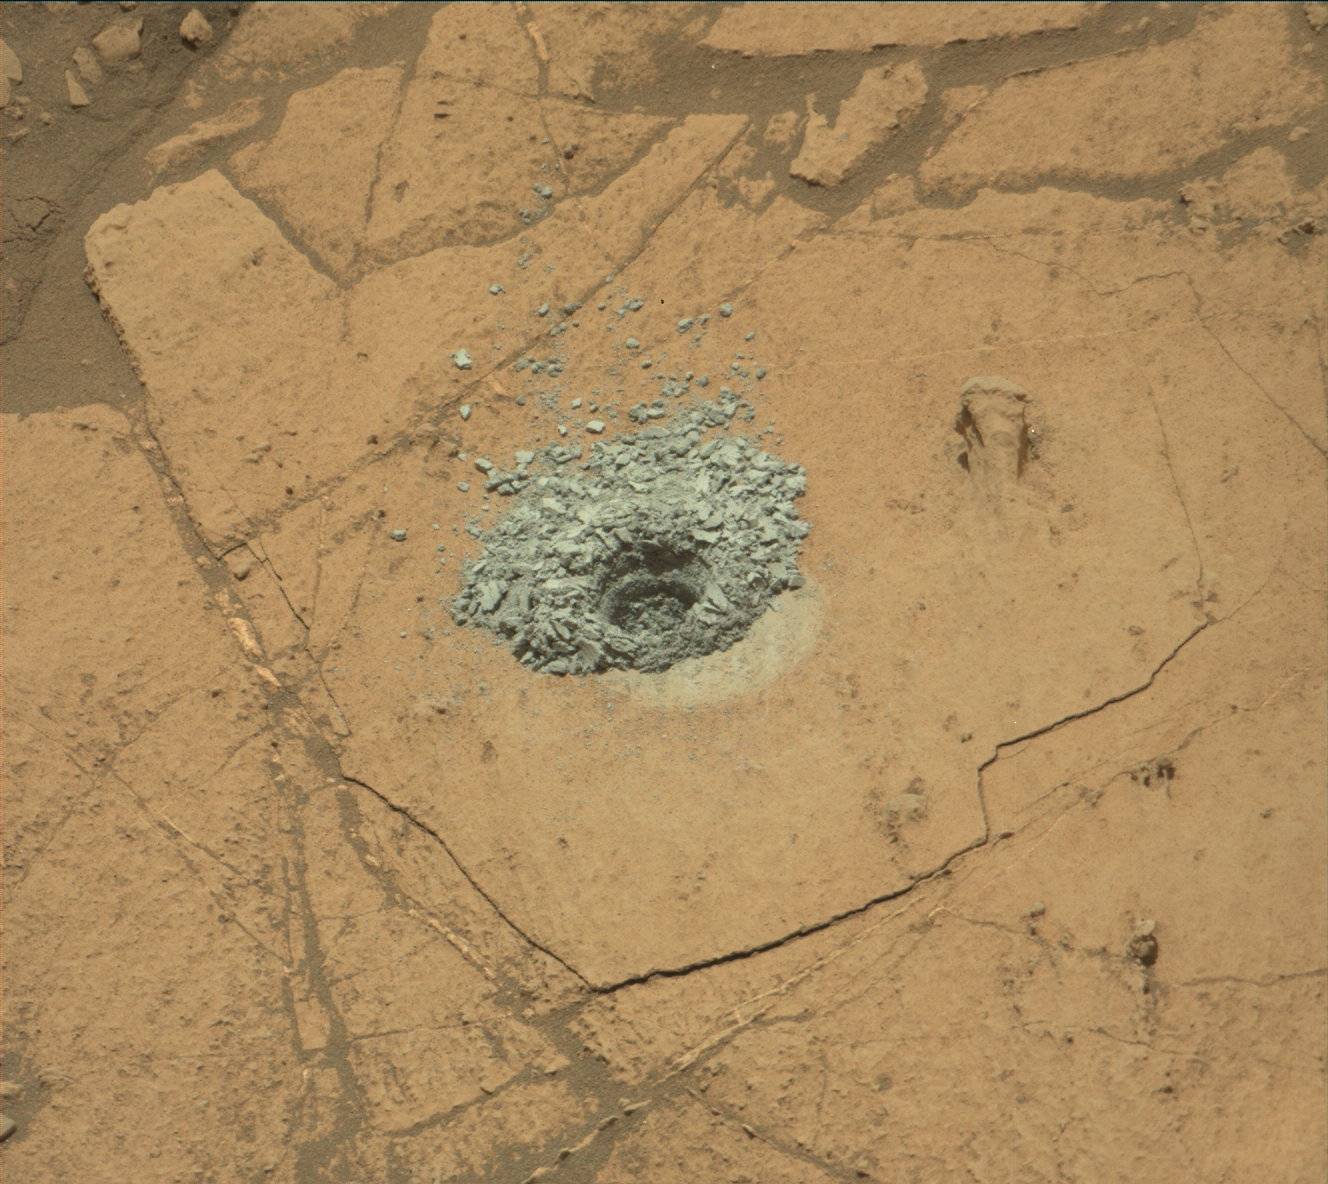 À la surface de Mars, le rover Curiosity réussit un forage sur une zone frontière géologique